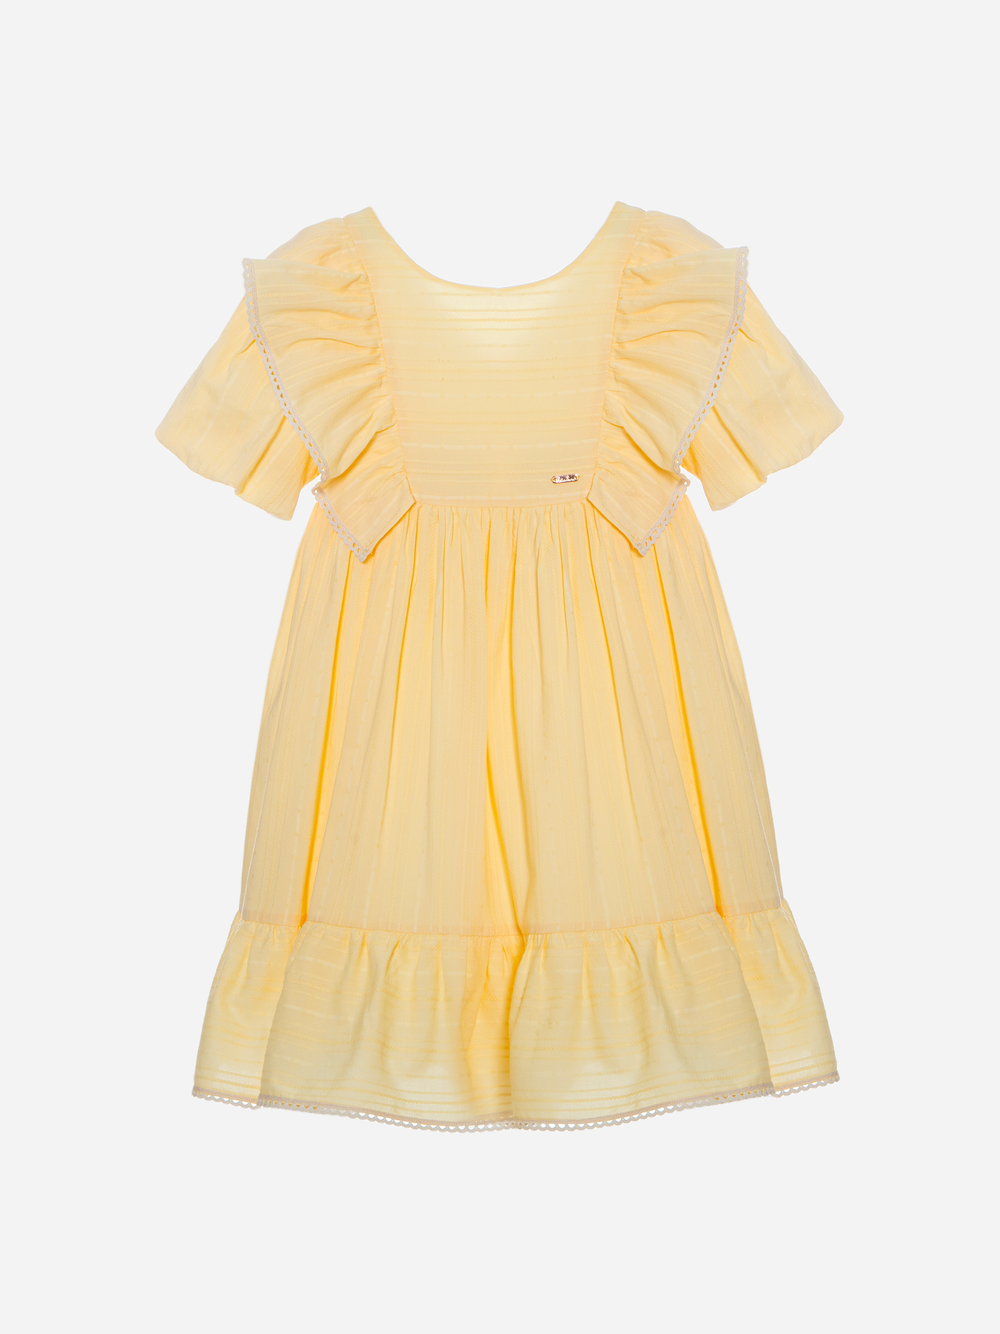 Girls yellow dress